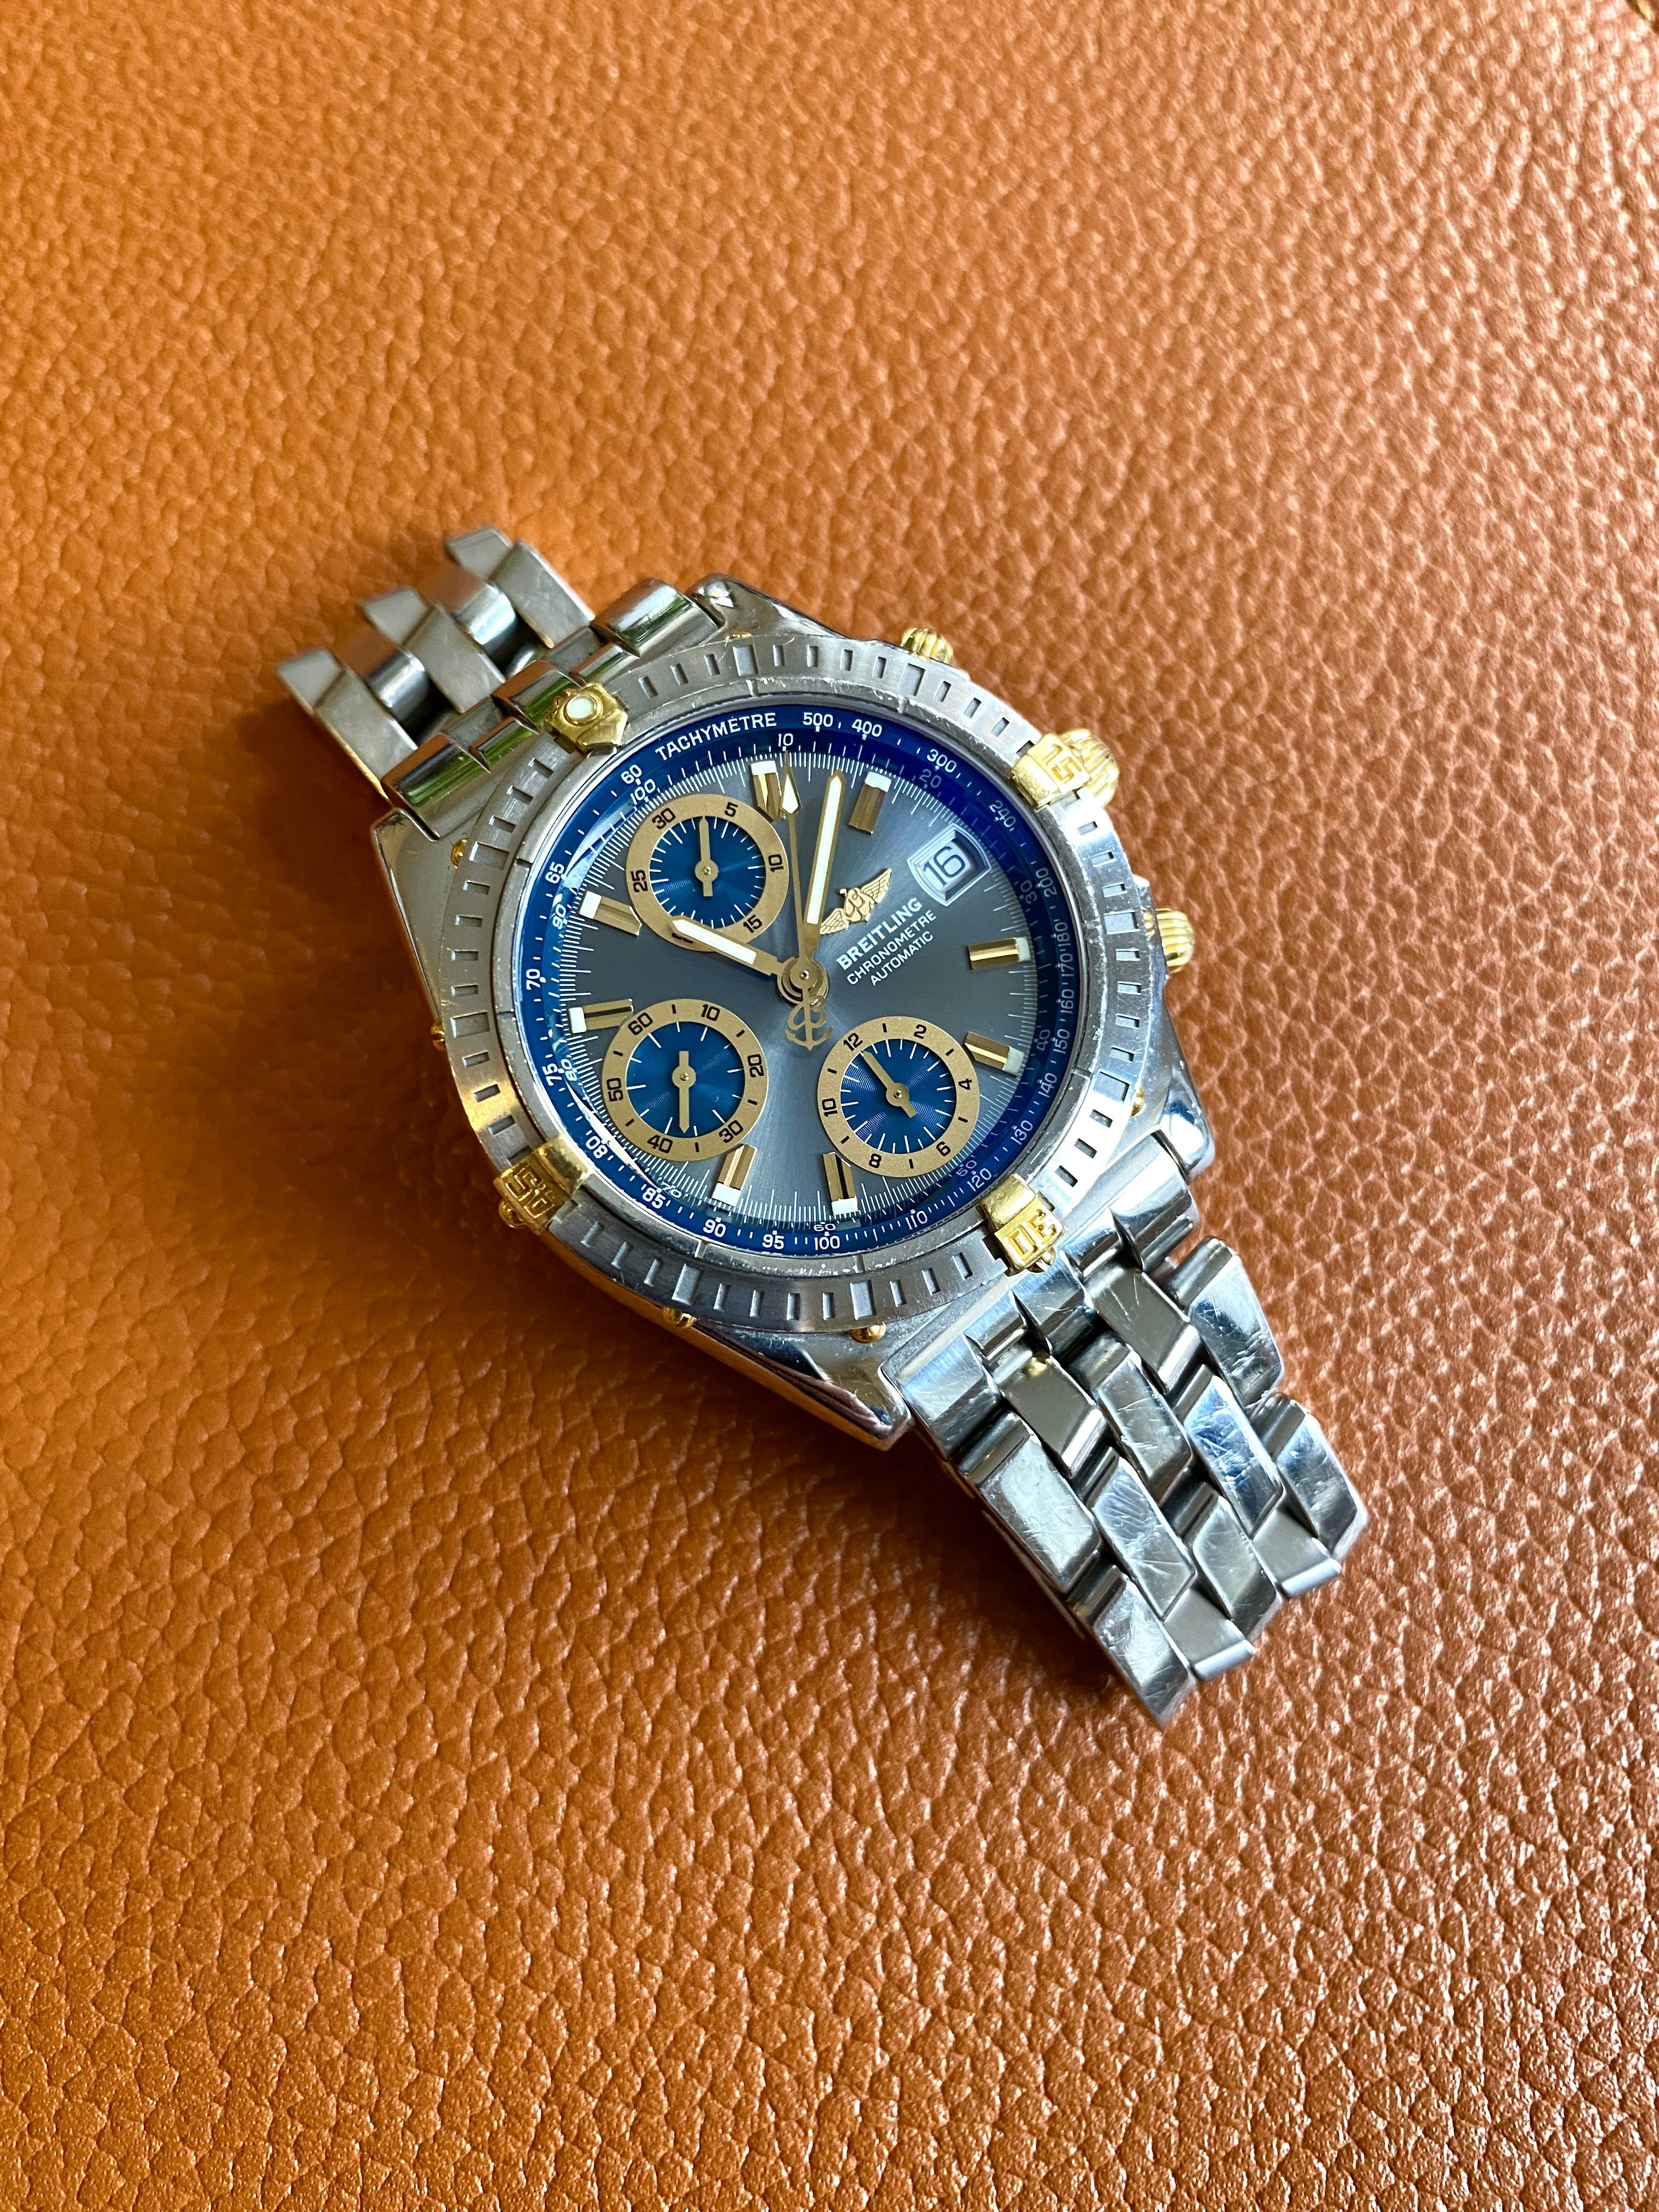 2002 Breitling Chronomat B13352 — Hodinkee Community